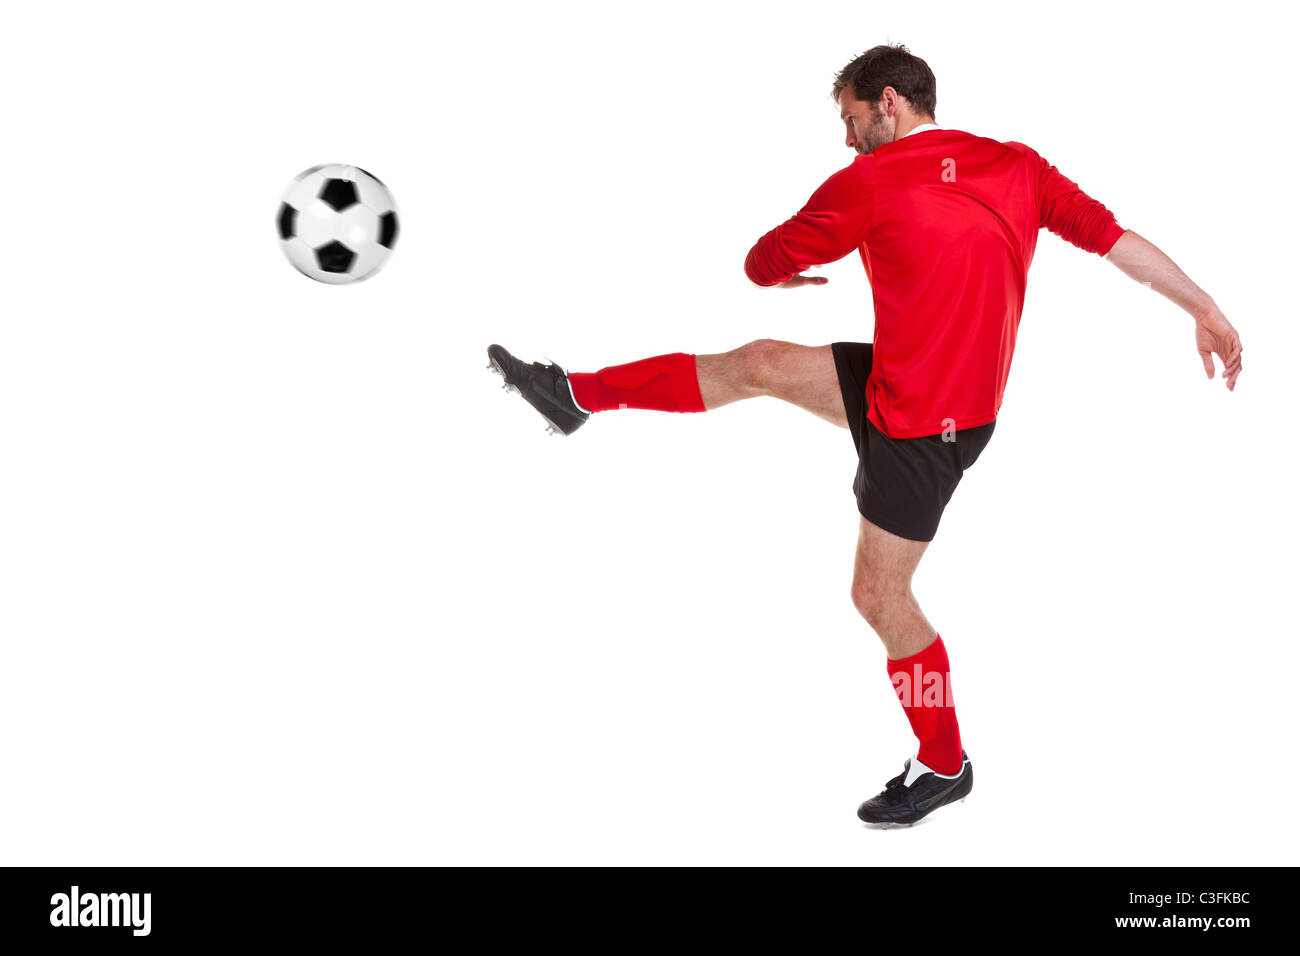 Foto de un futbolista o jugador de fútbol recortadas sobre un fondo blanco. Foto de stock